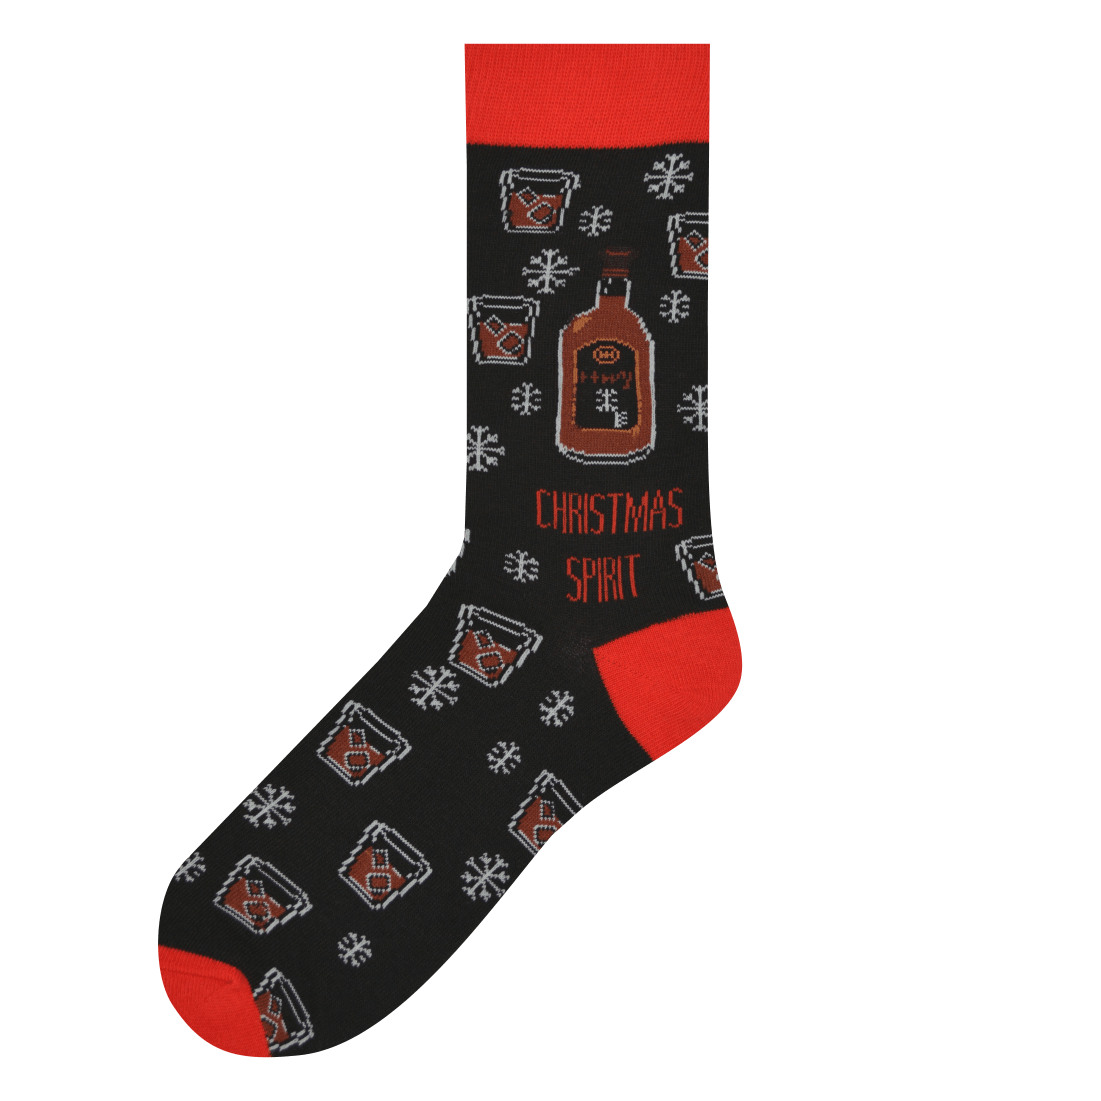 Medias Locas calcetines divertidos de diseño Freaky Socks. medias navideñas